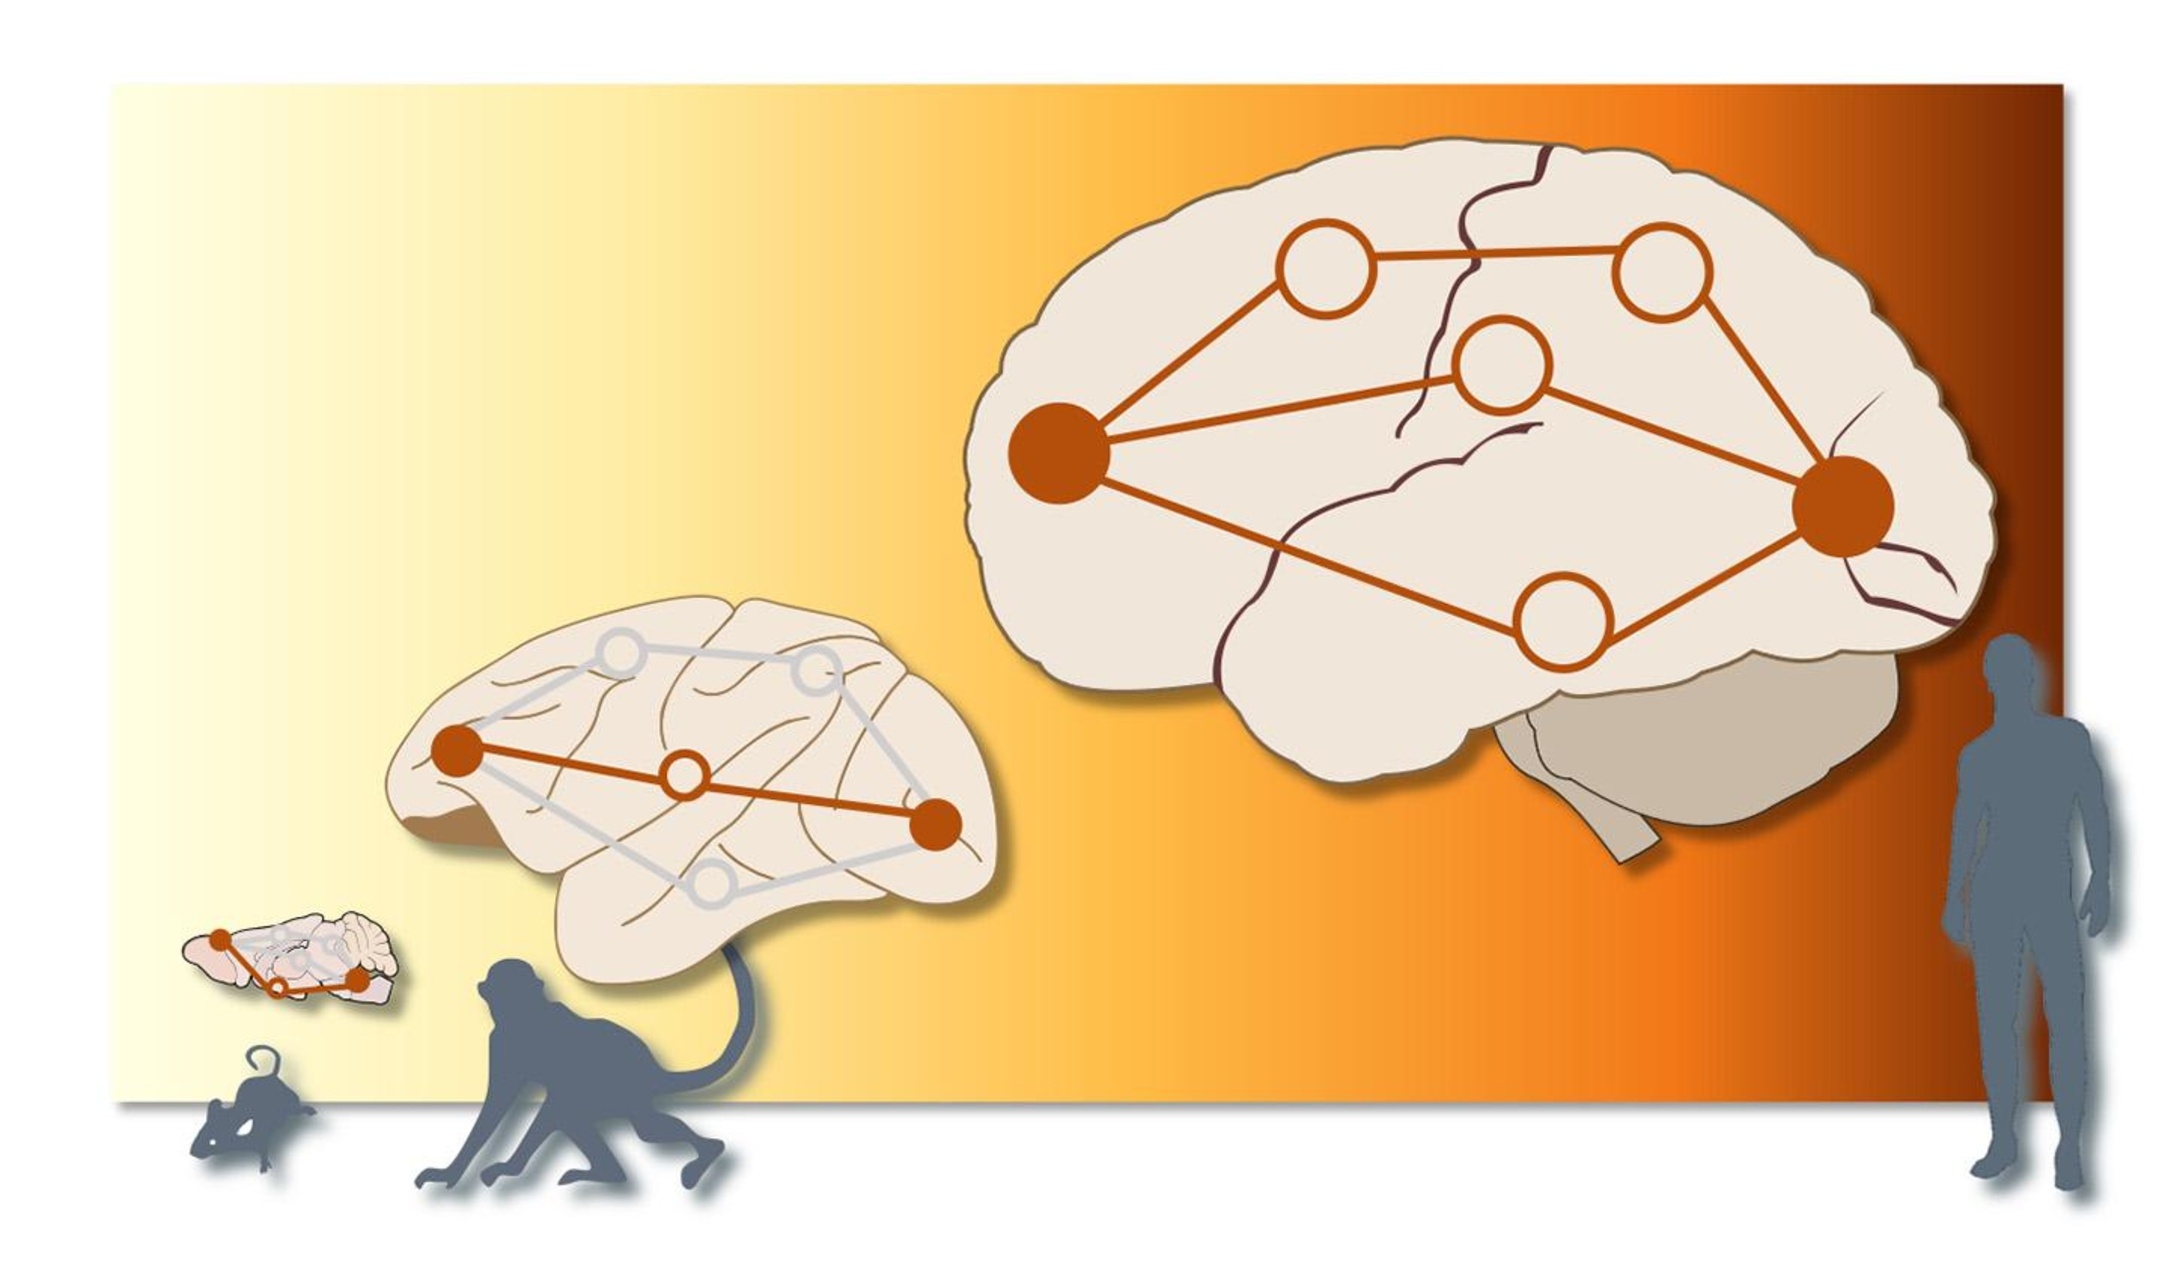 Cervello: nel cervello dei topi e dei macachi, le informazioni sono inviate lungo un'unica "strada", mentre nell'uomo esistono più percorsi paralleli tra la stessa fonte e il bersaglio